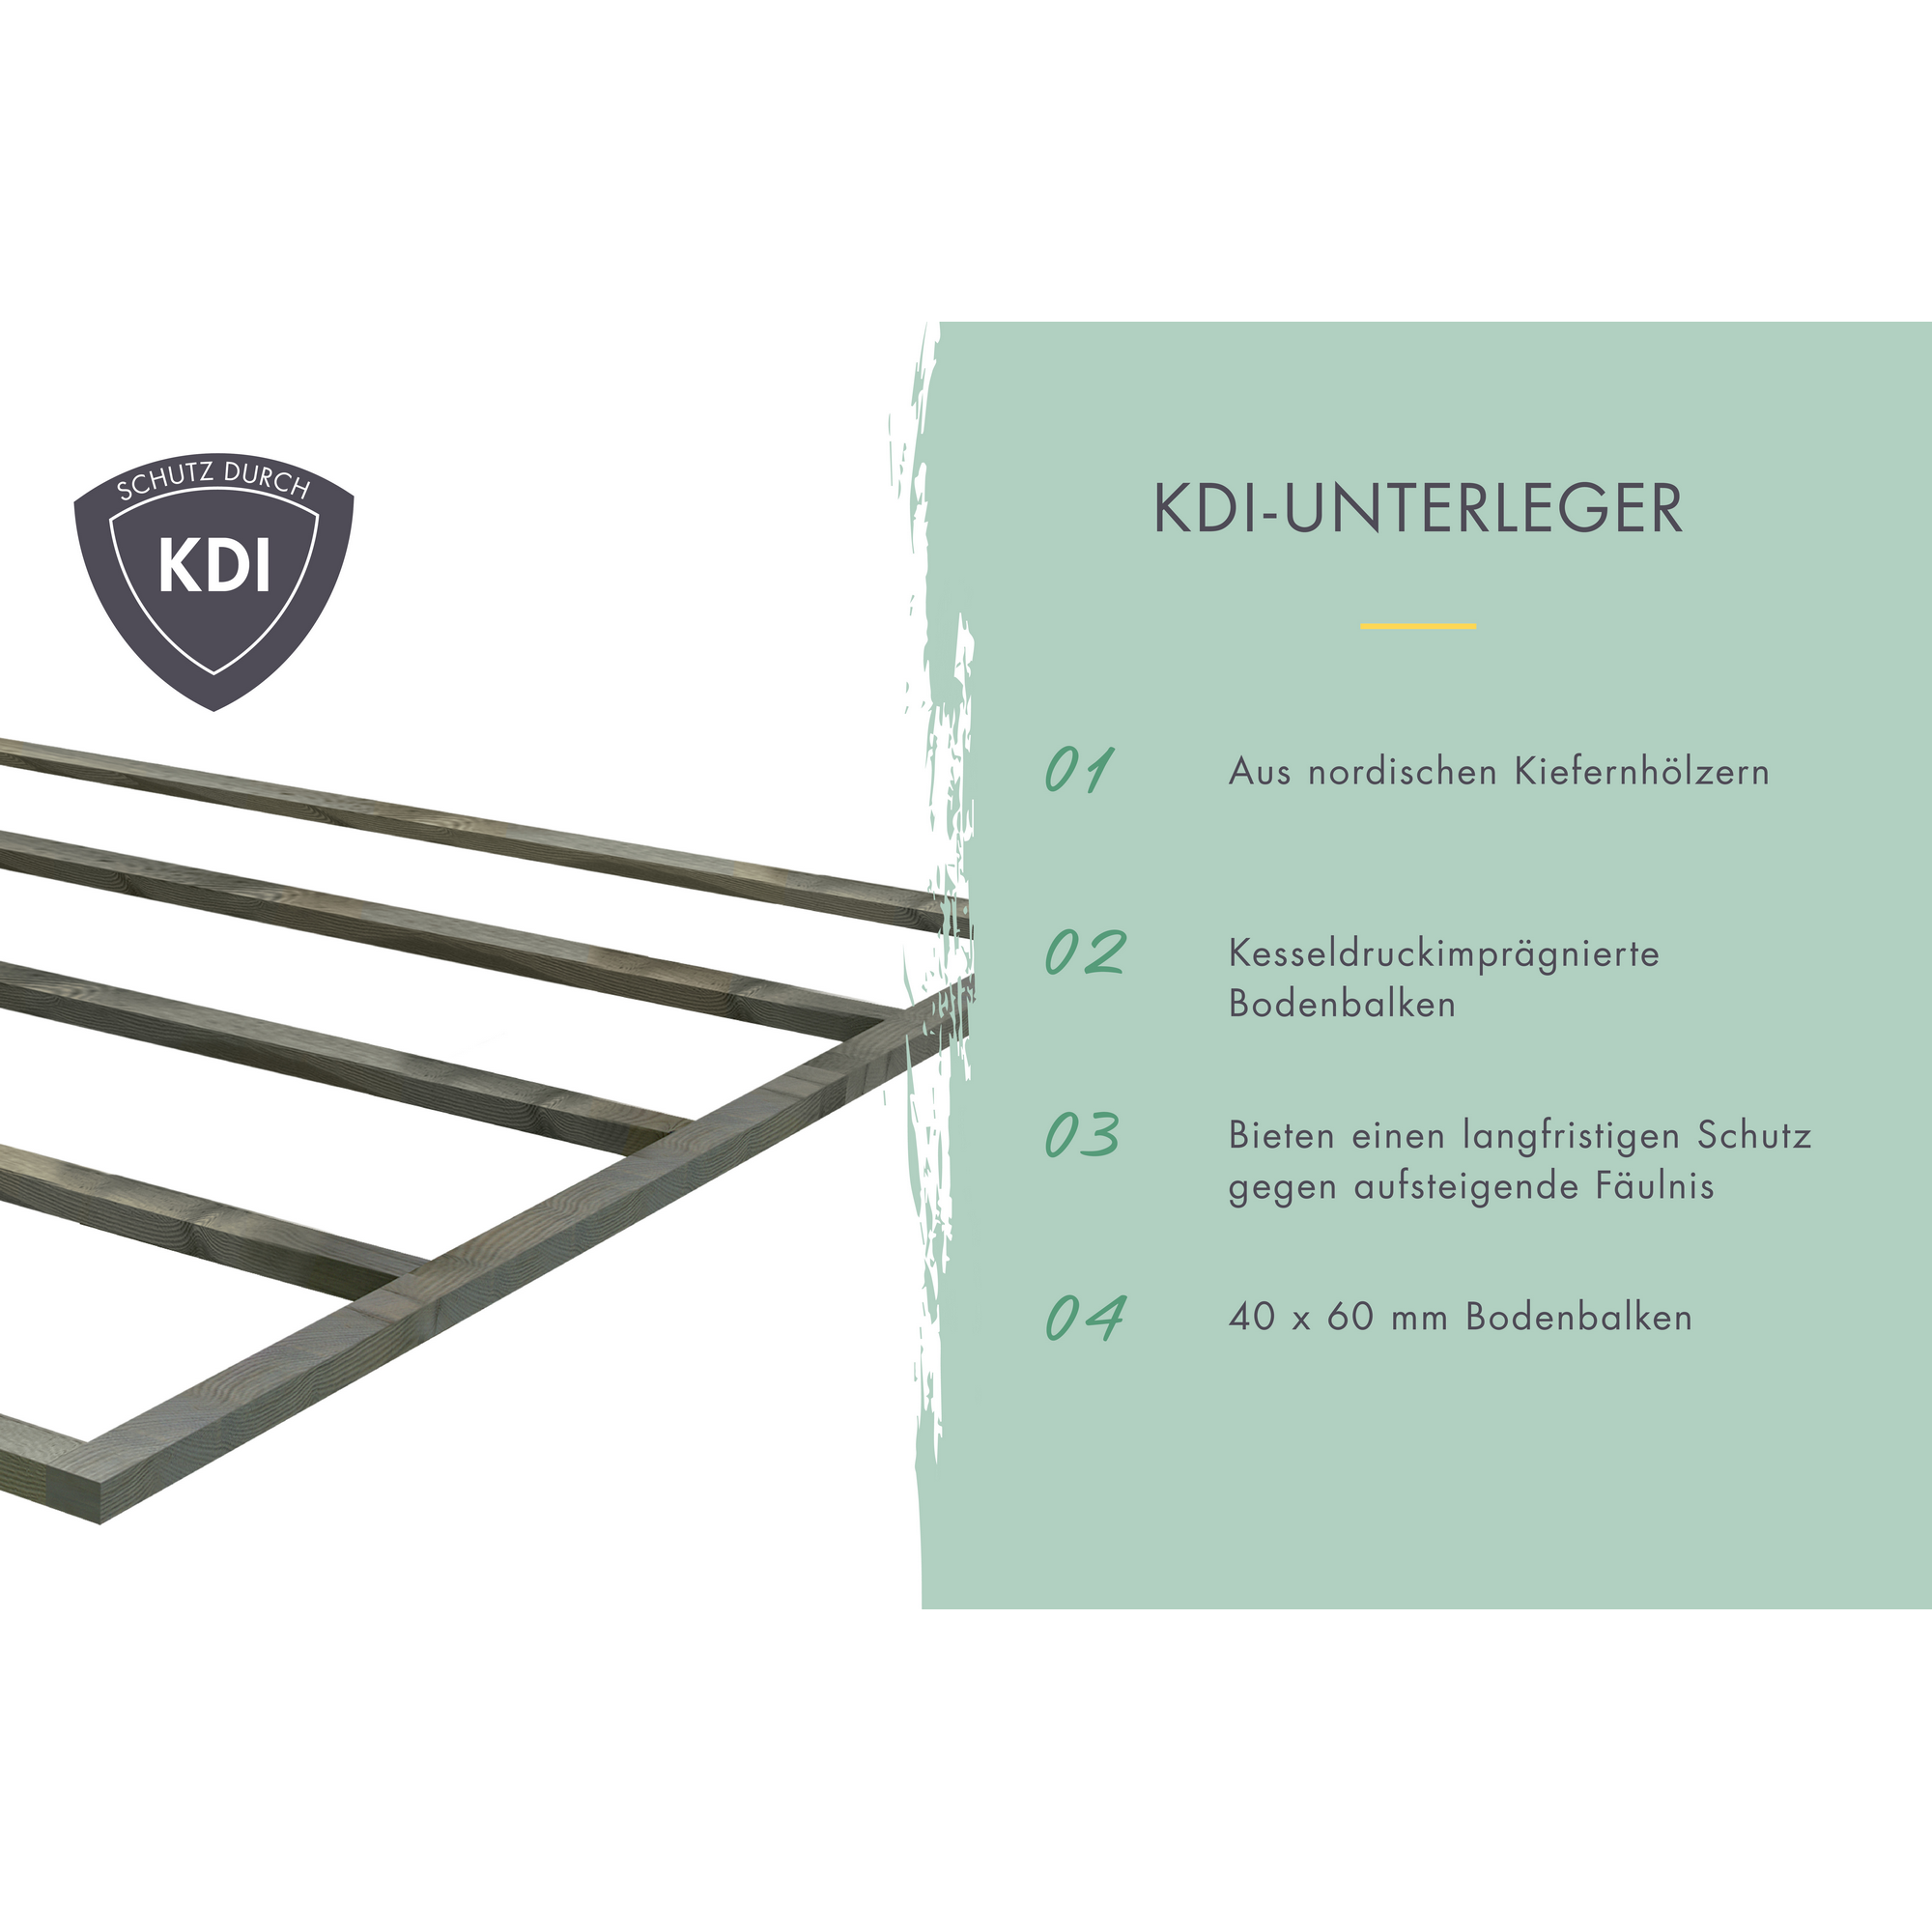 Gartenhaus-Set 'Kombo' terragrau 300 x 196,5 x 186 cm mit Pultdach, Schrank und Anbaudach + product picture